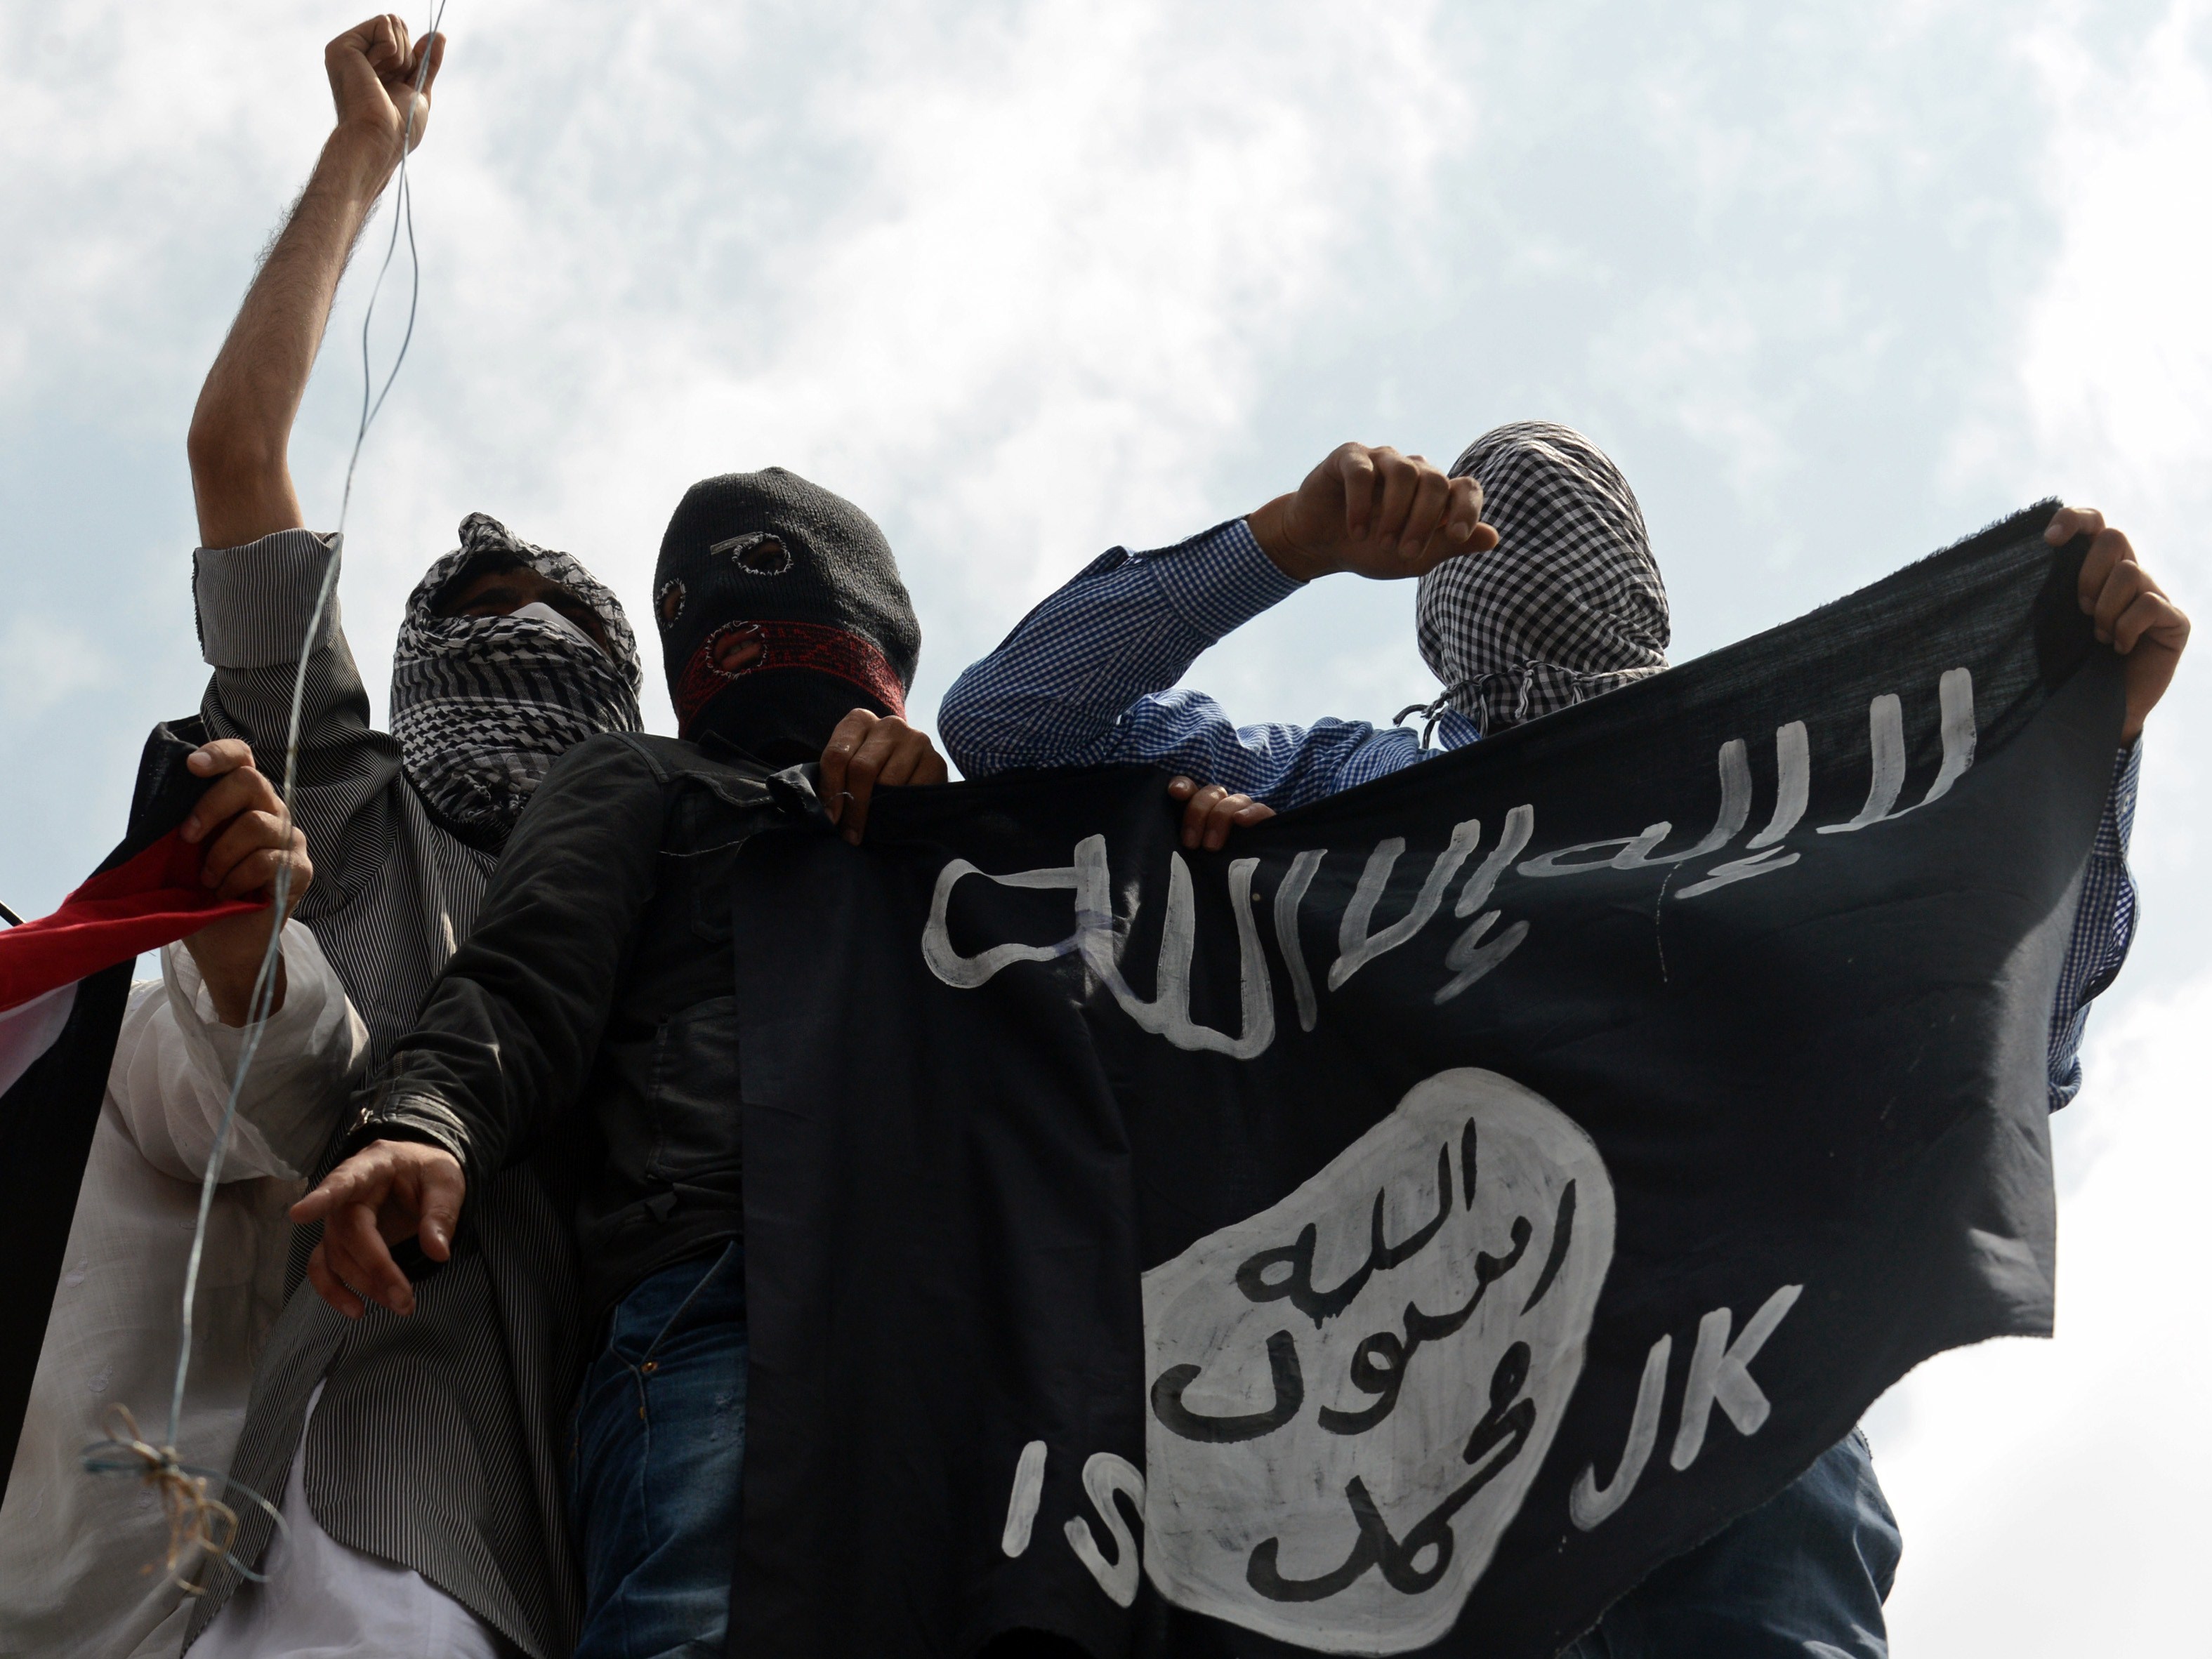 Deutschlands IS-Chef gefasst: Abu Walaa, der Prediger ohne Gesicht und 4 Komplitzen verhaftet